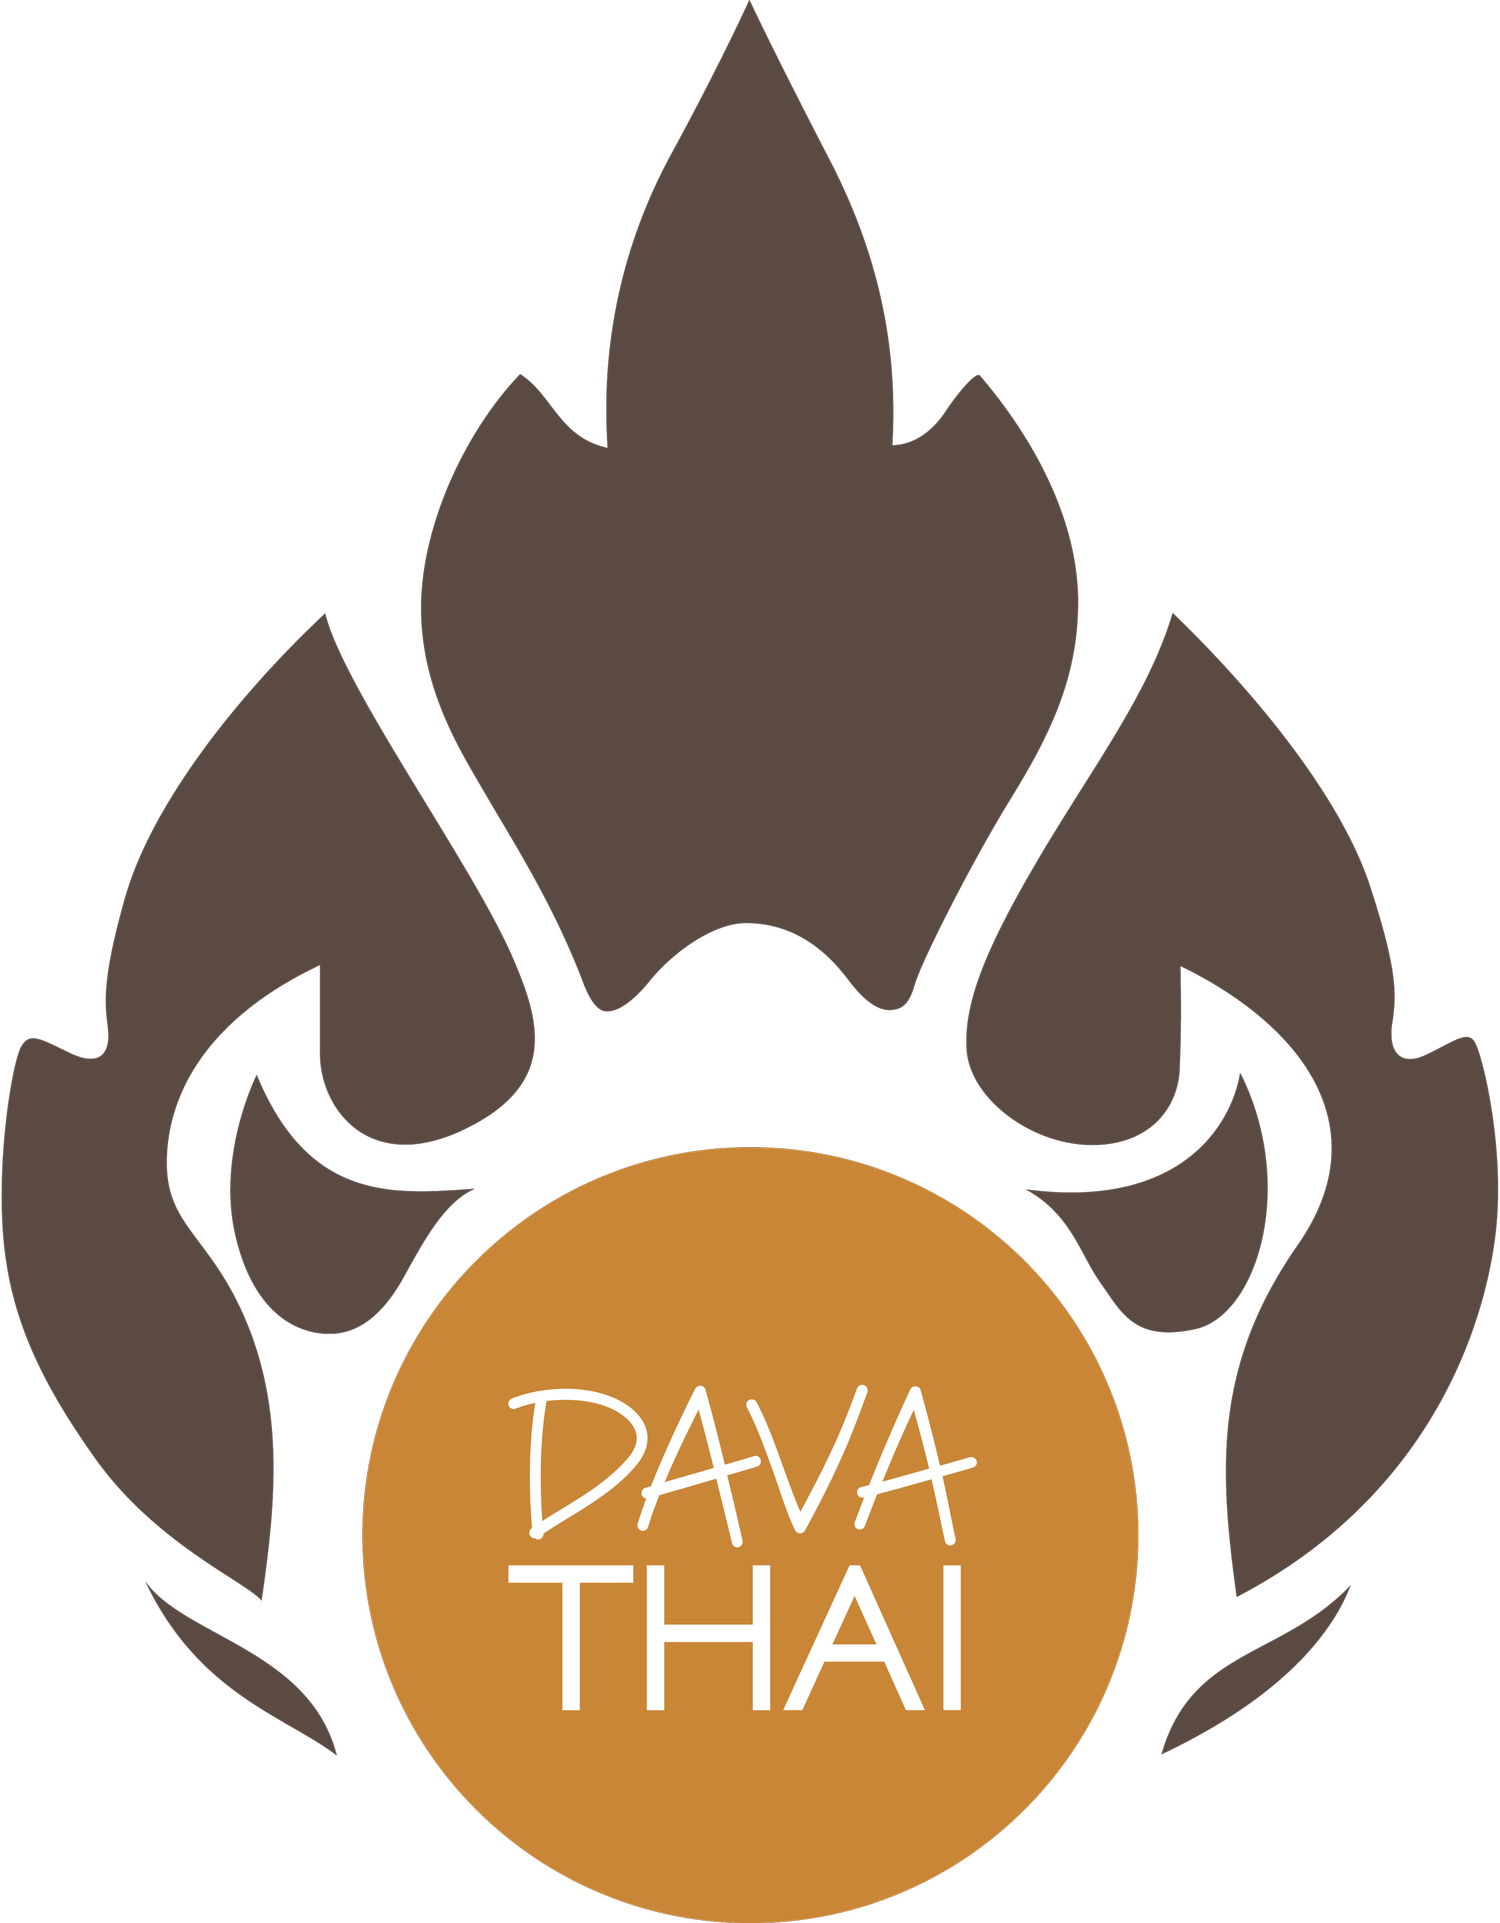 Dava Thai